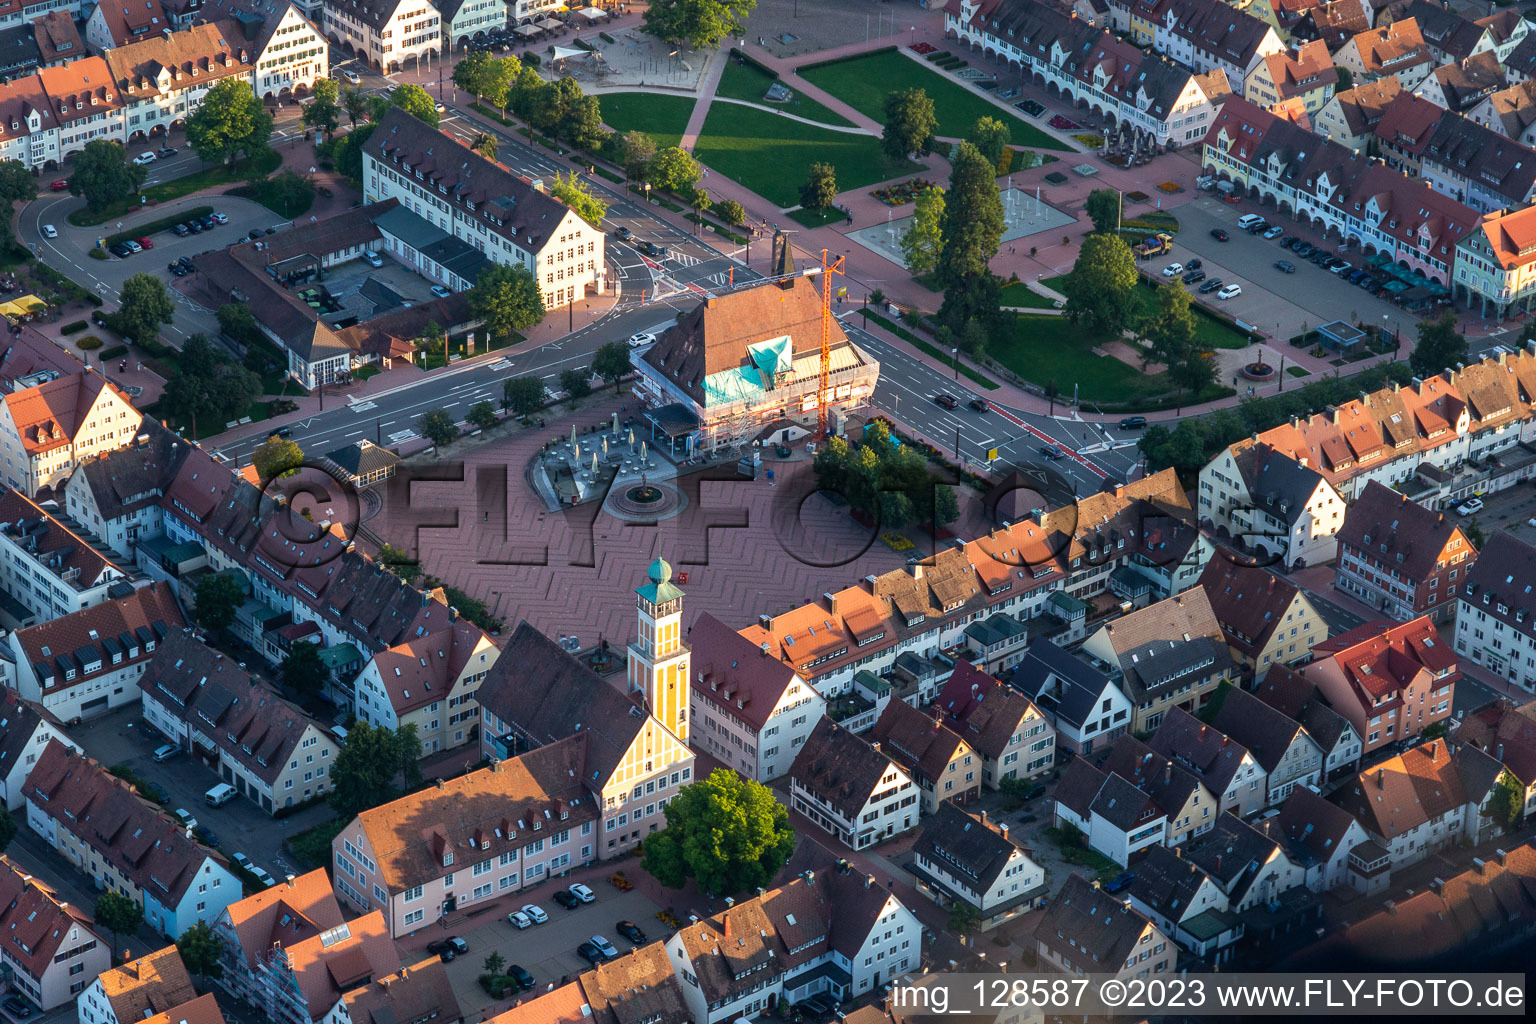 Vue aérienne de Hôtel de ville de l'administration municipale sur la place du marché au centre-ville à Freudenstadt dans le département Bade-Wurtemberg, Allemagne